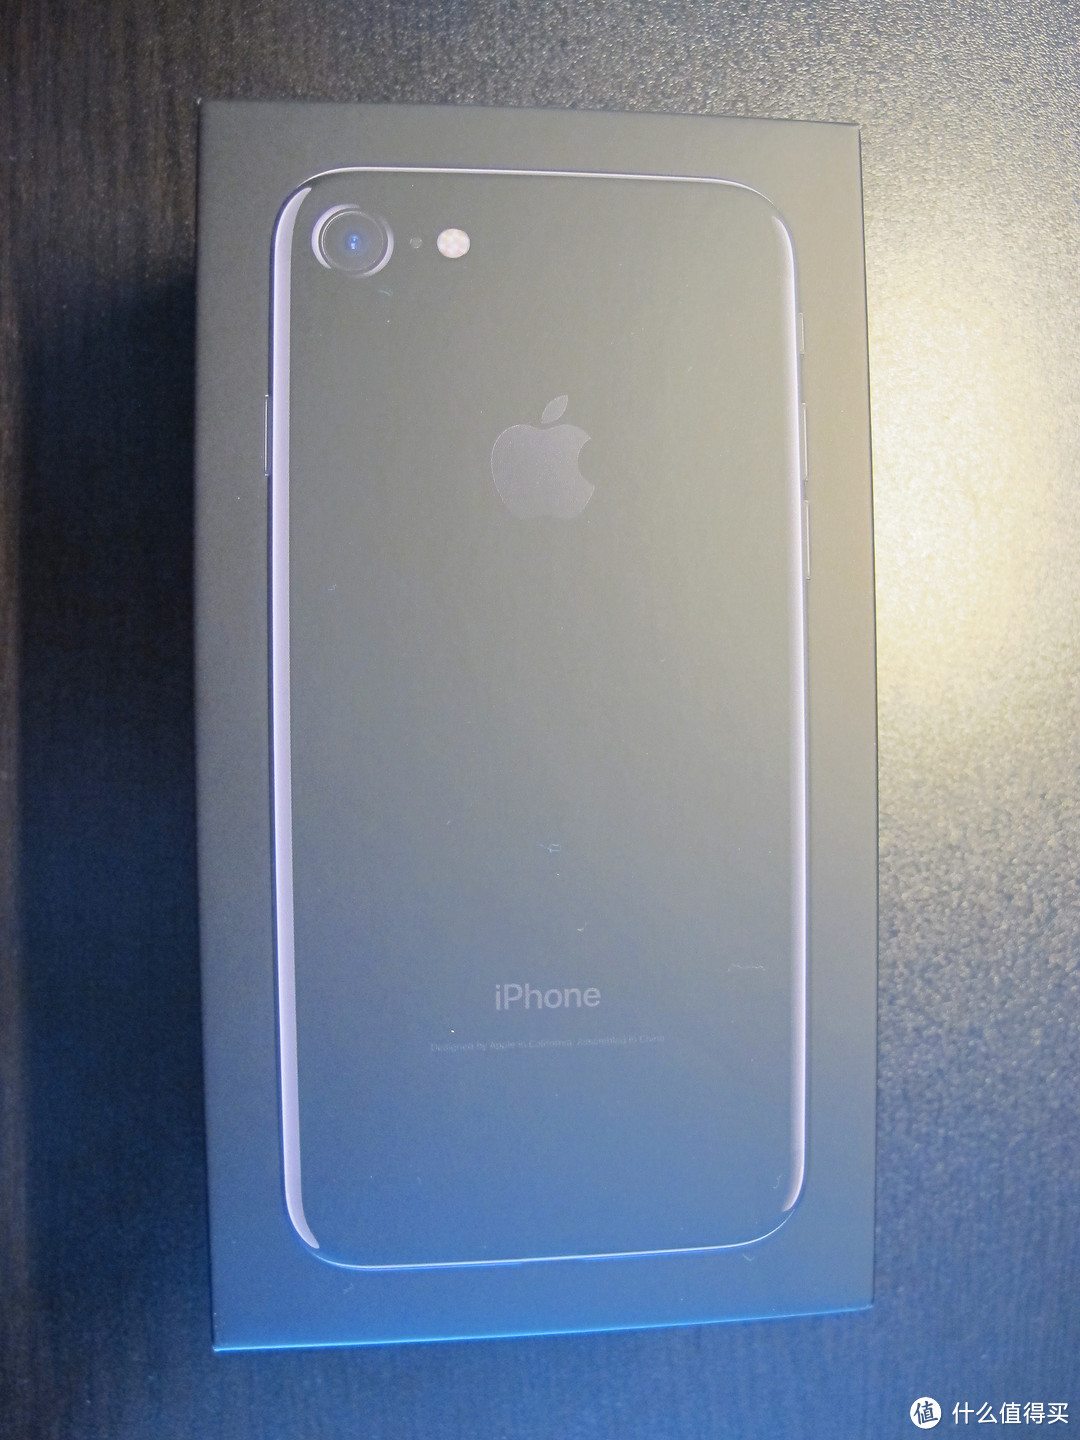 Apple 苹果 iPhone7 亮黑 128G 招行免息12期预购分享